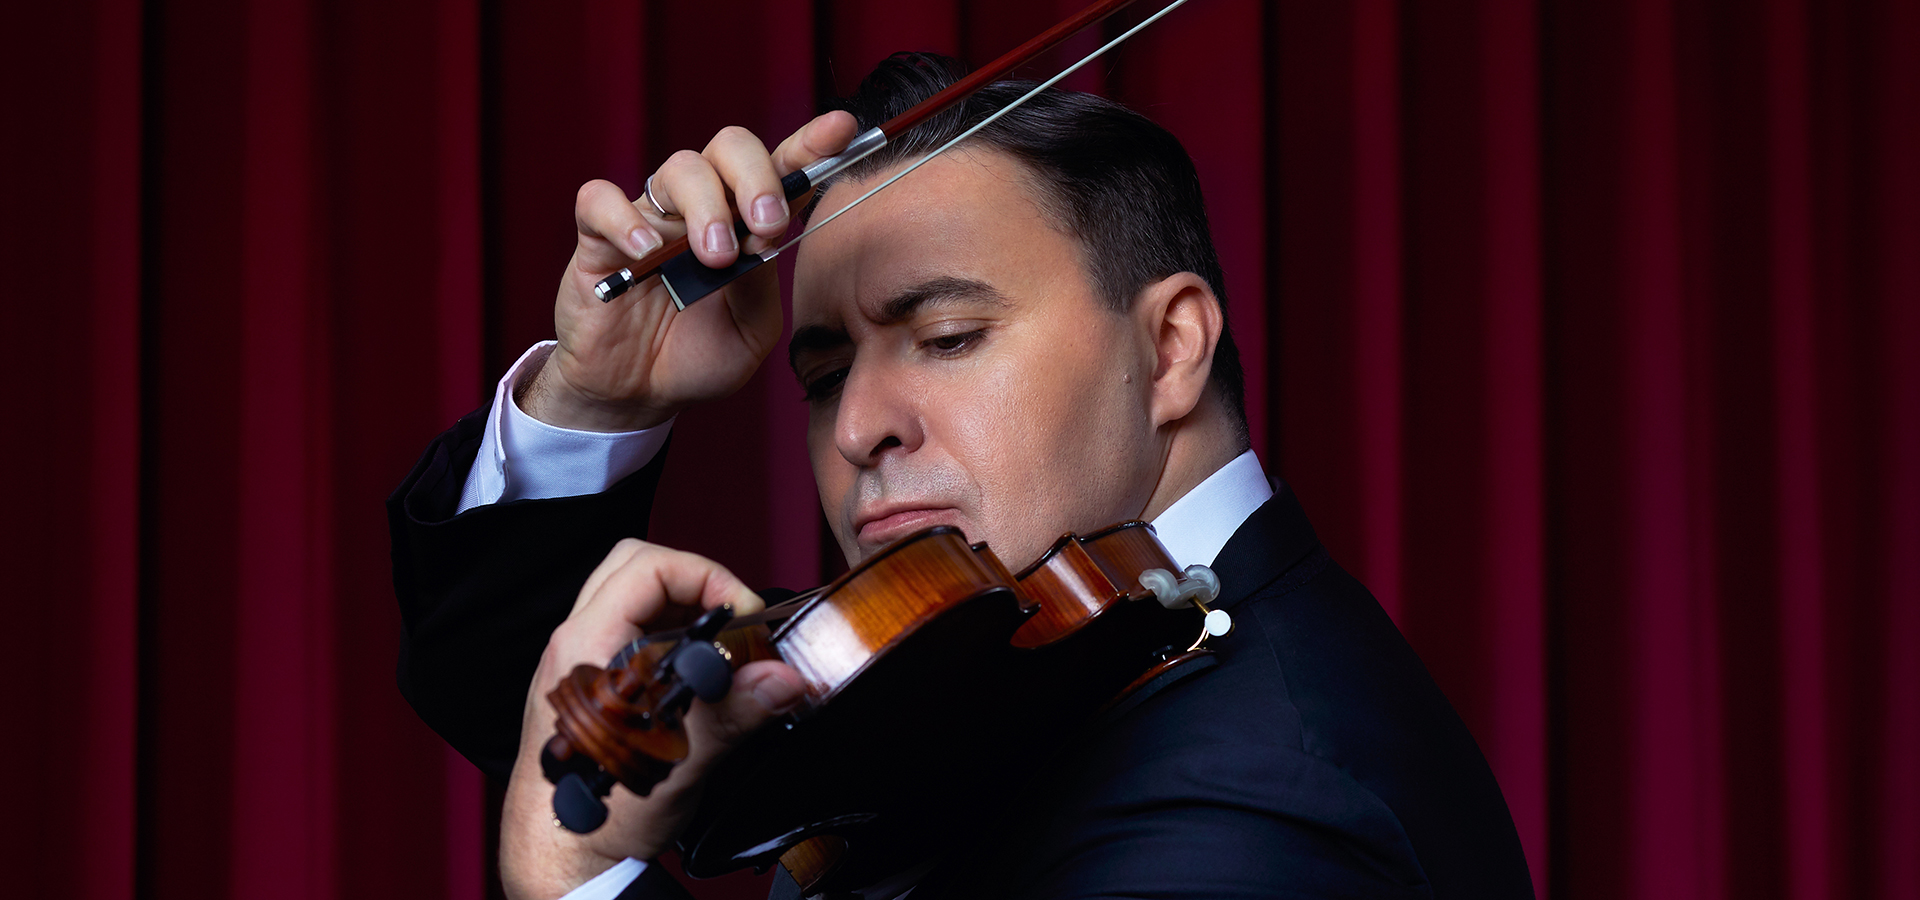 Maxim Vengerov playing violin